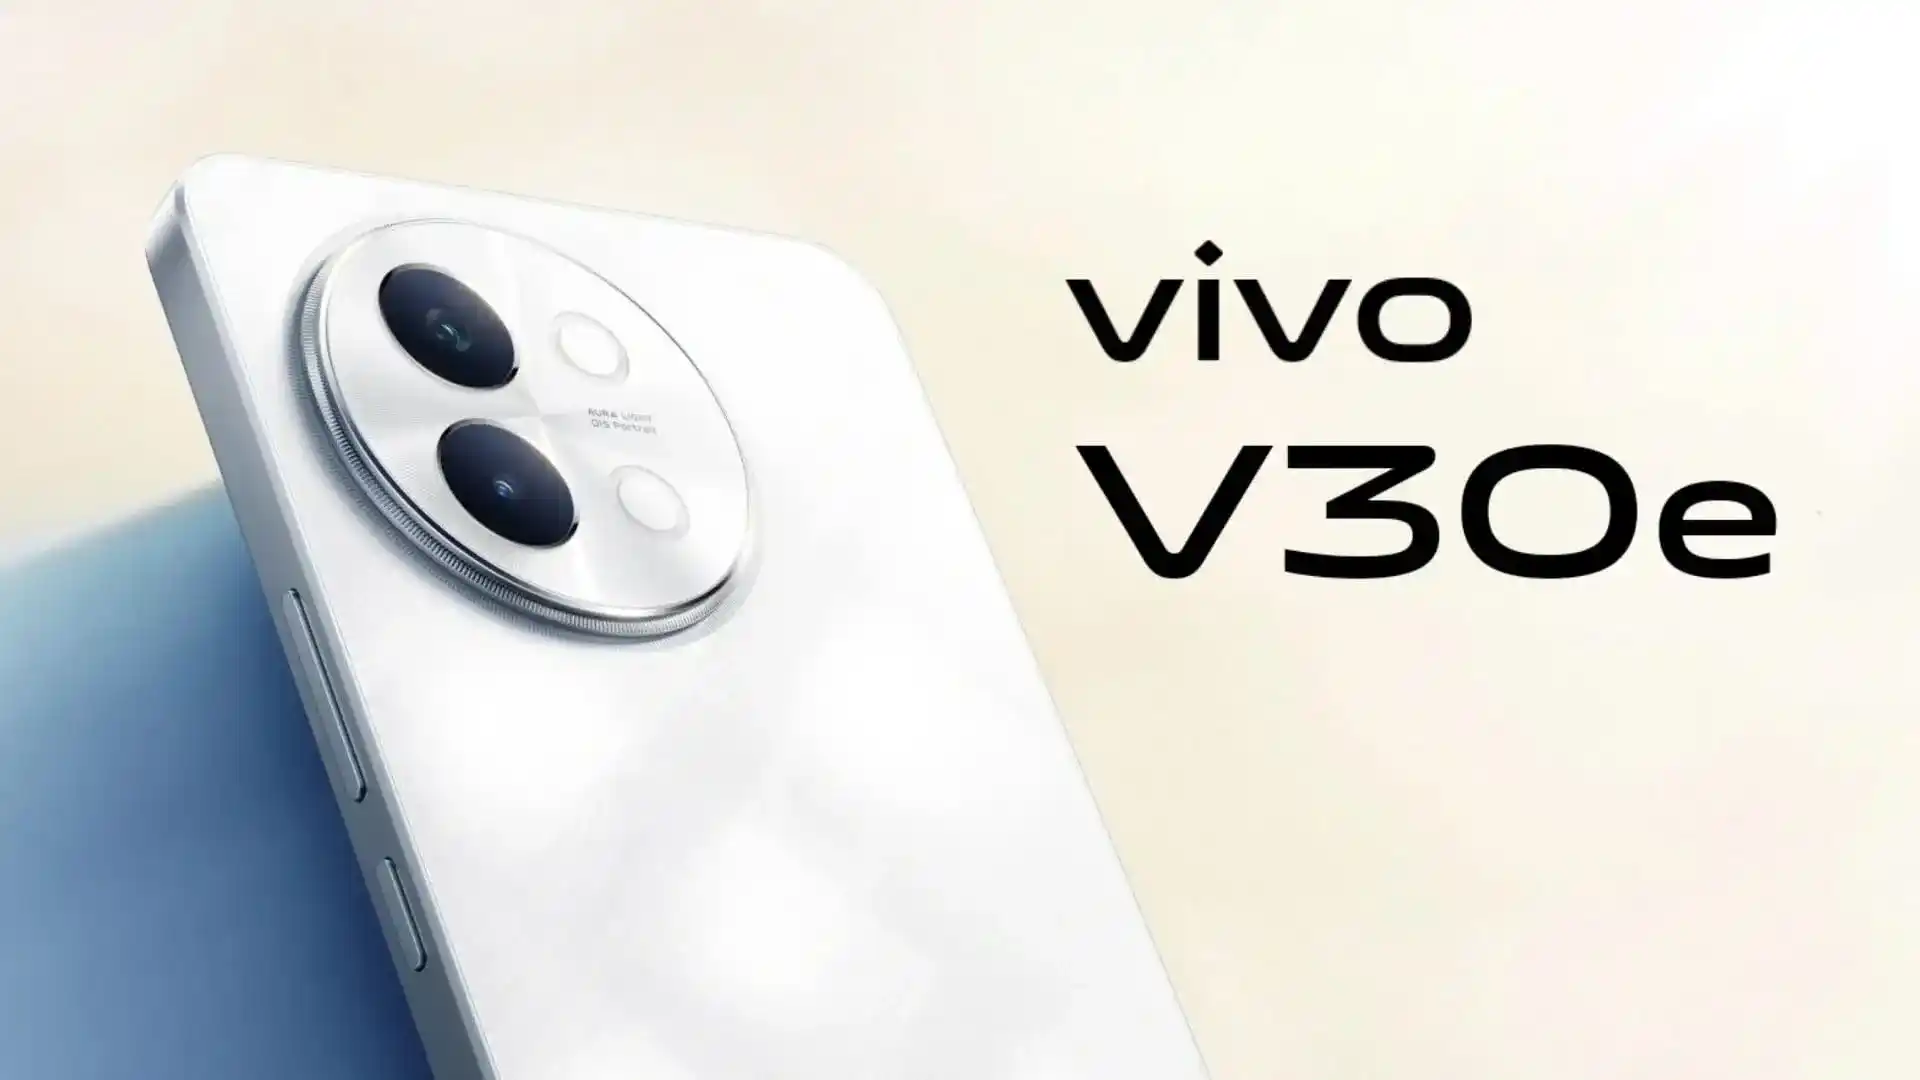 Ein Insider hat das Aussehen und die technischen Daten des neuen Vivo V30e Smartphones enthüllt